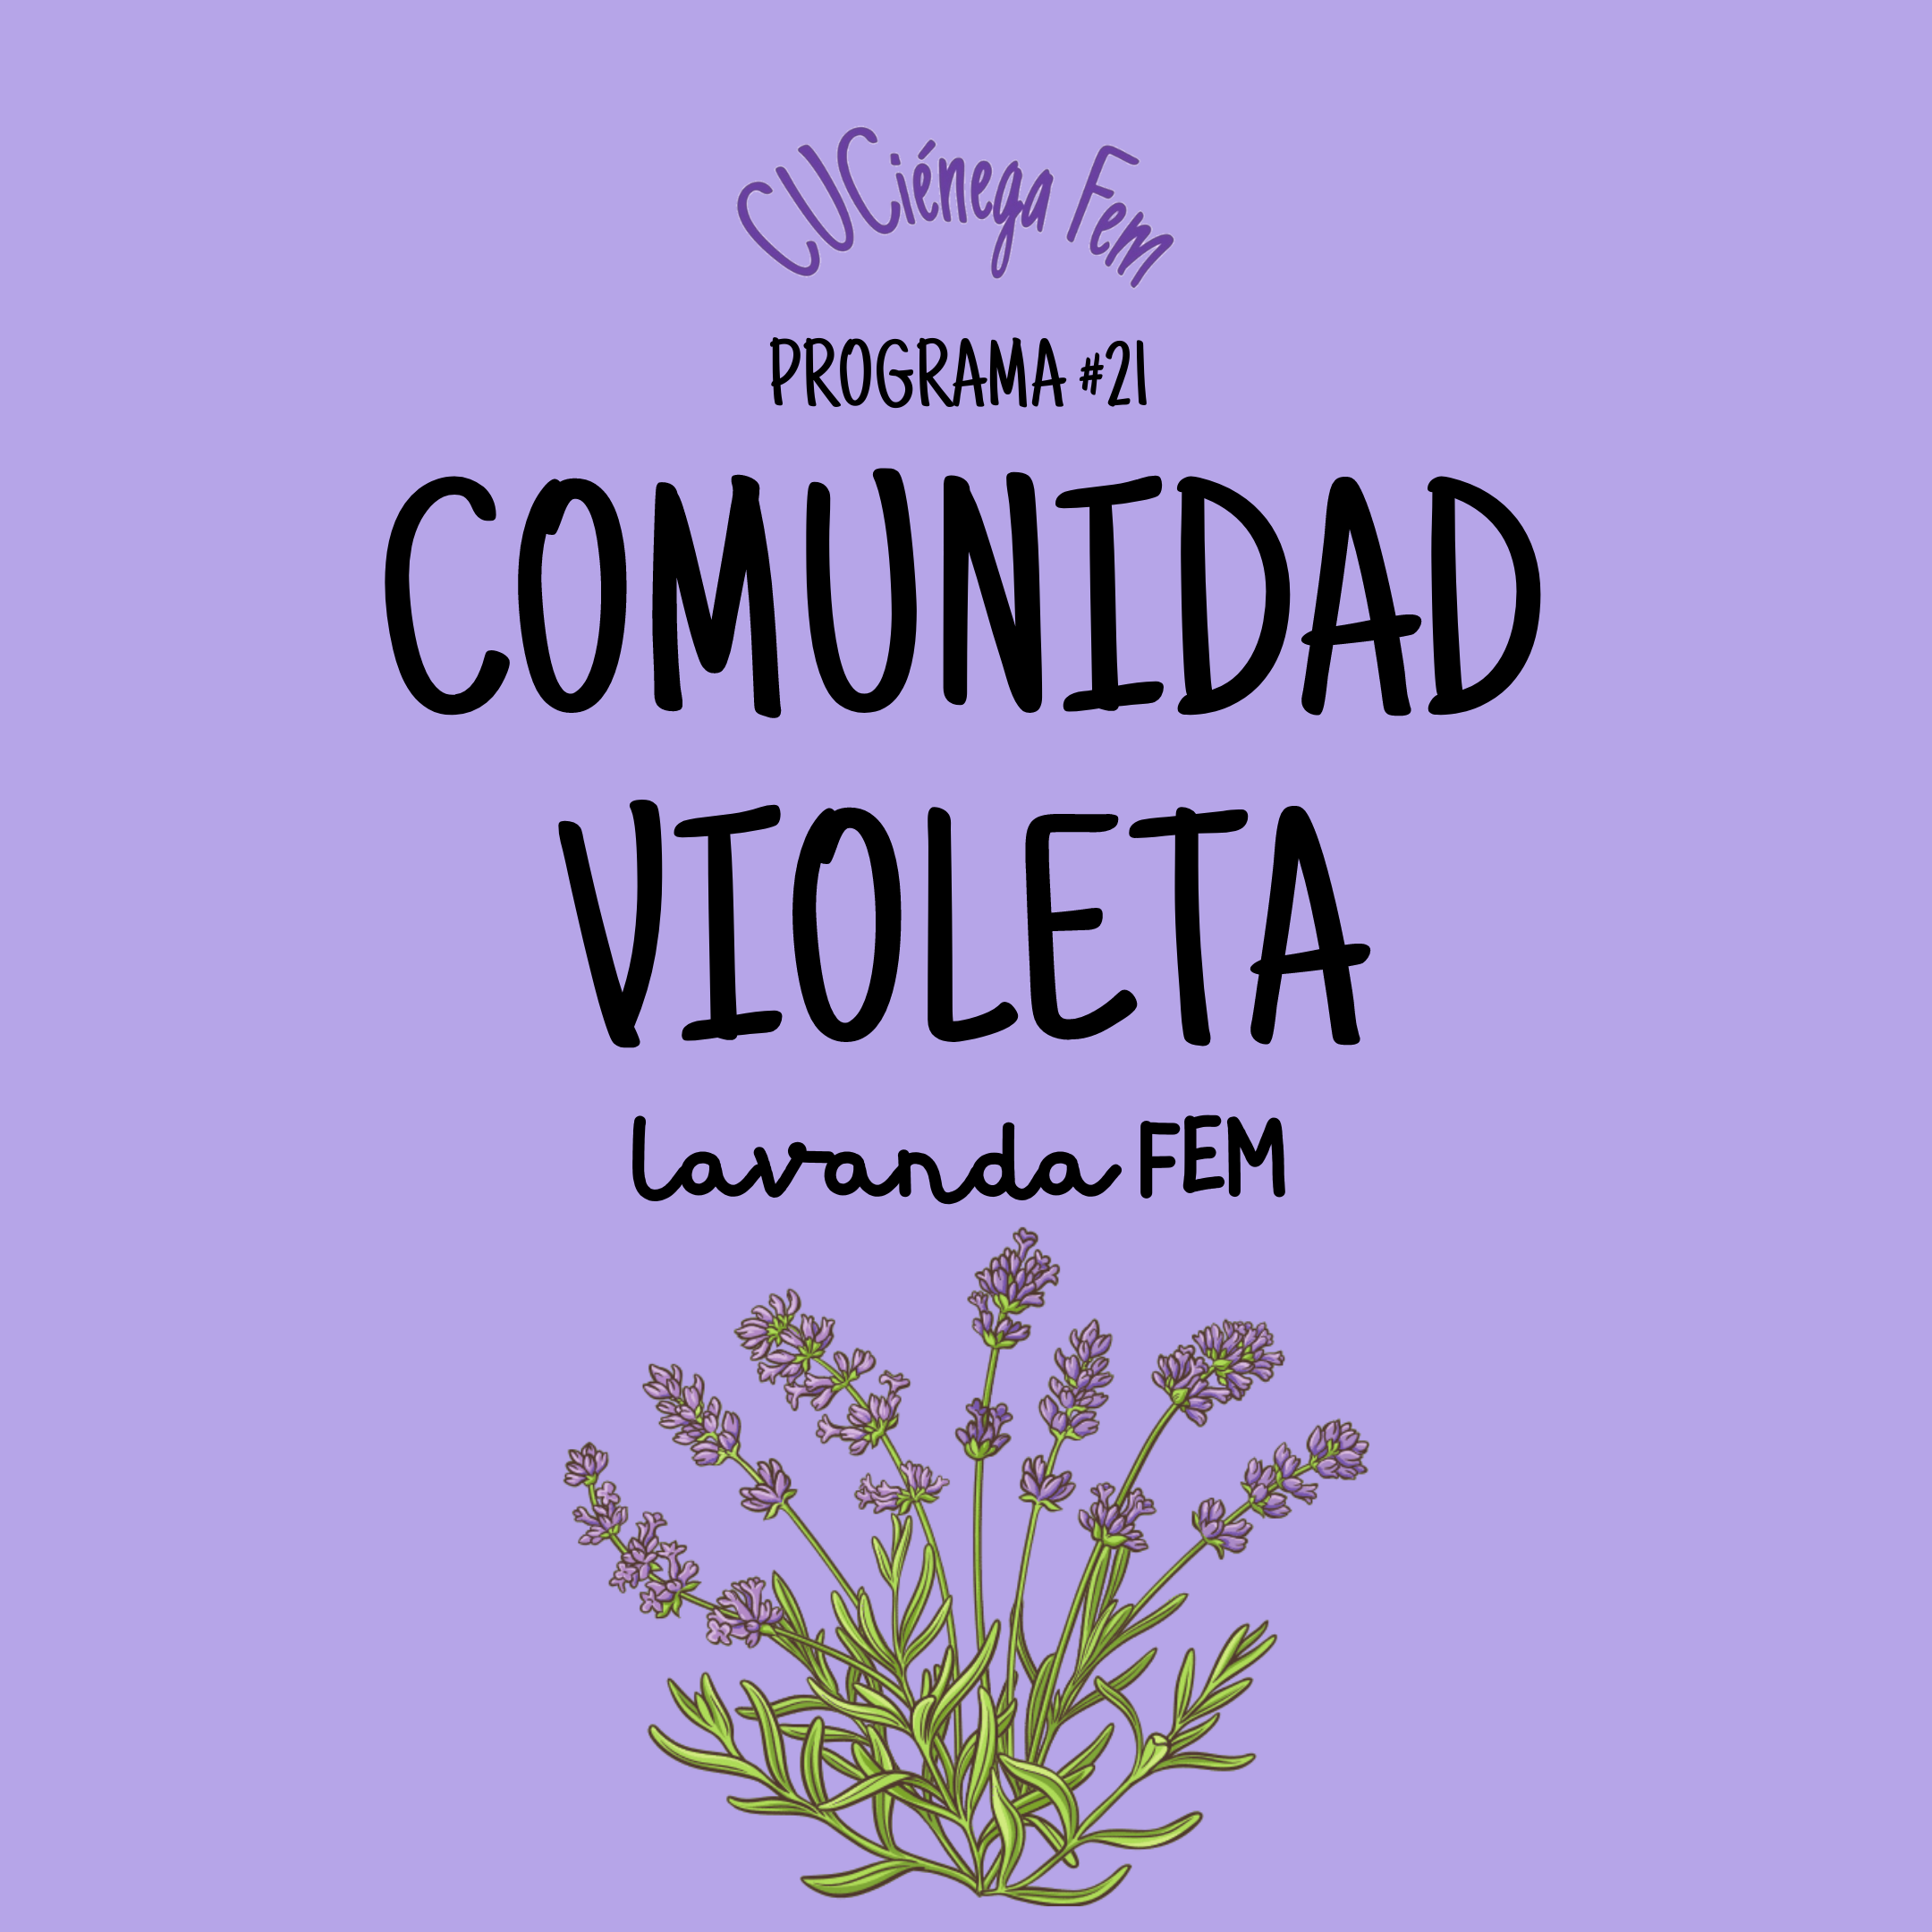 CUCiénega Fem | Comunidad Violeta: Lavanda Fem